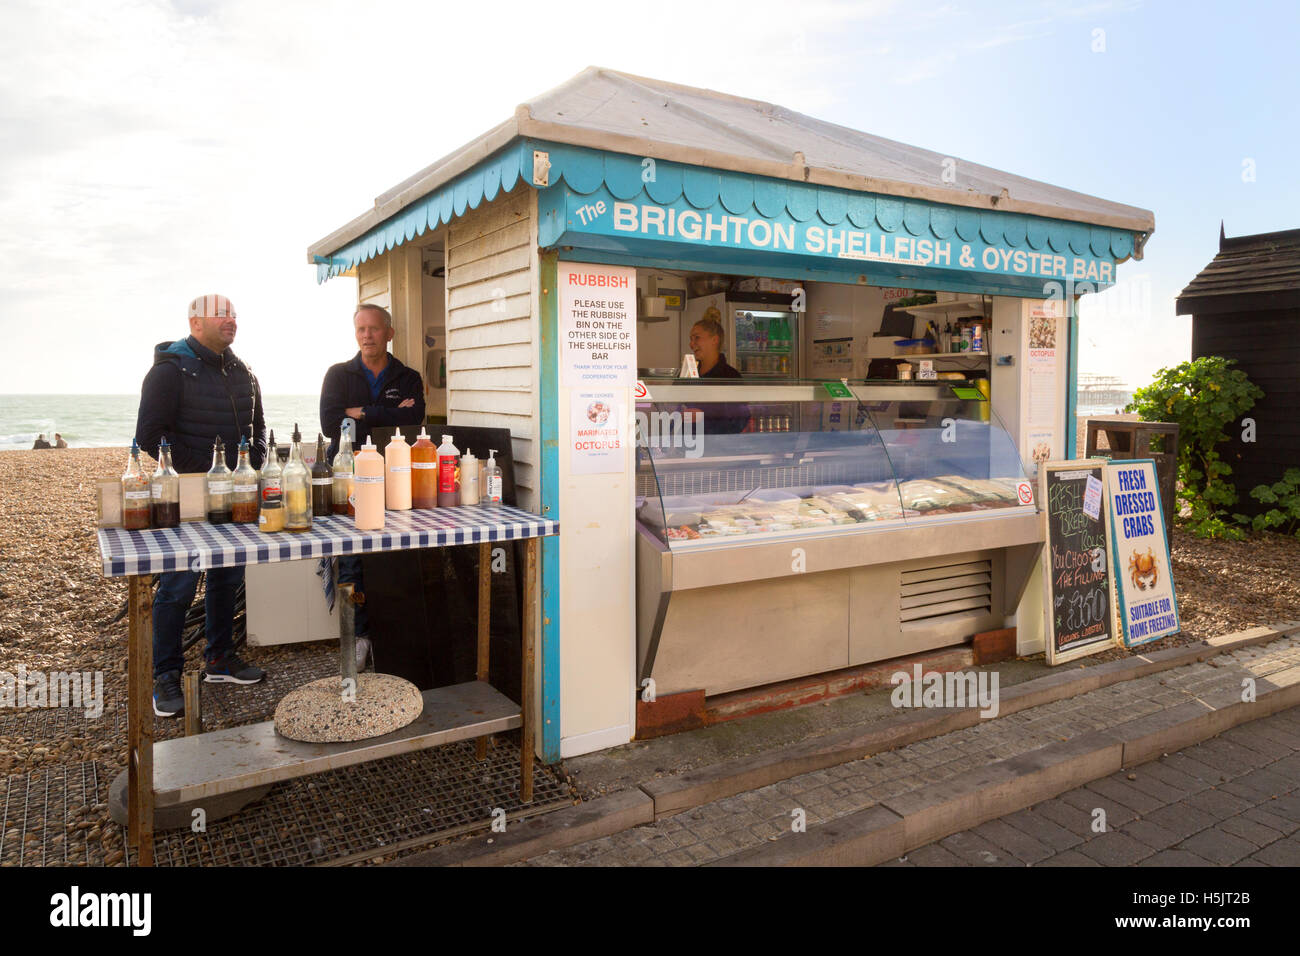 Muscheln und Austern-Bar Meeresfrüchte stall, Brighton Seafront, Brighton, East Sussex England UK Stockfoto